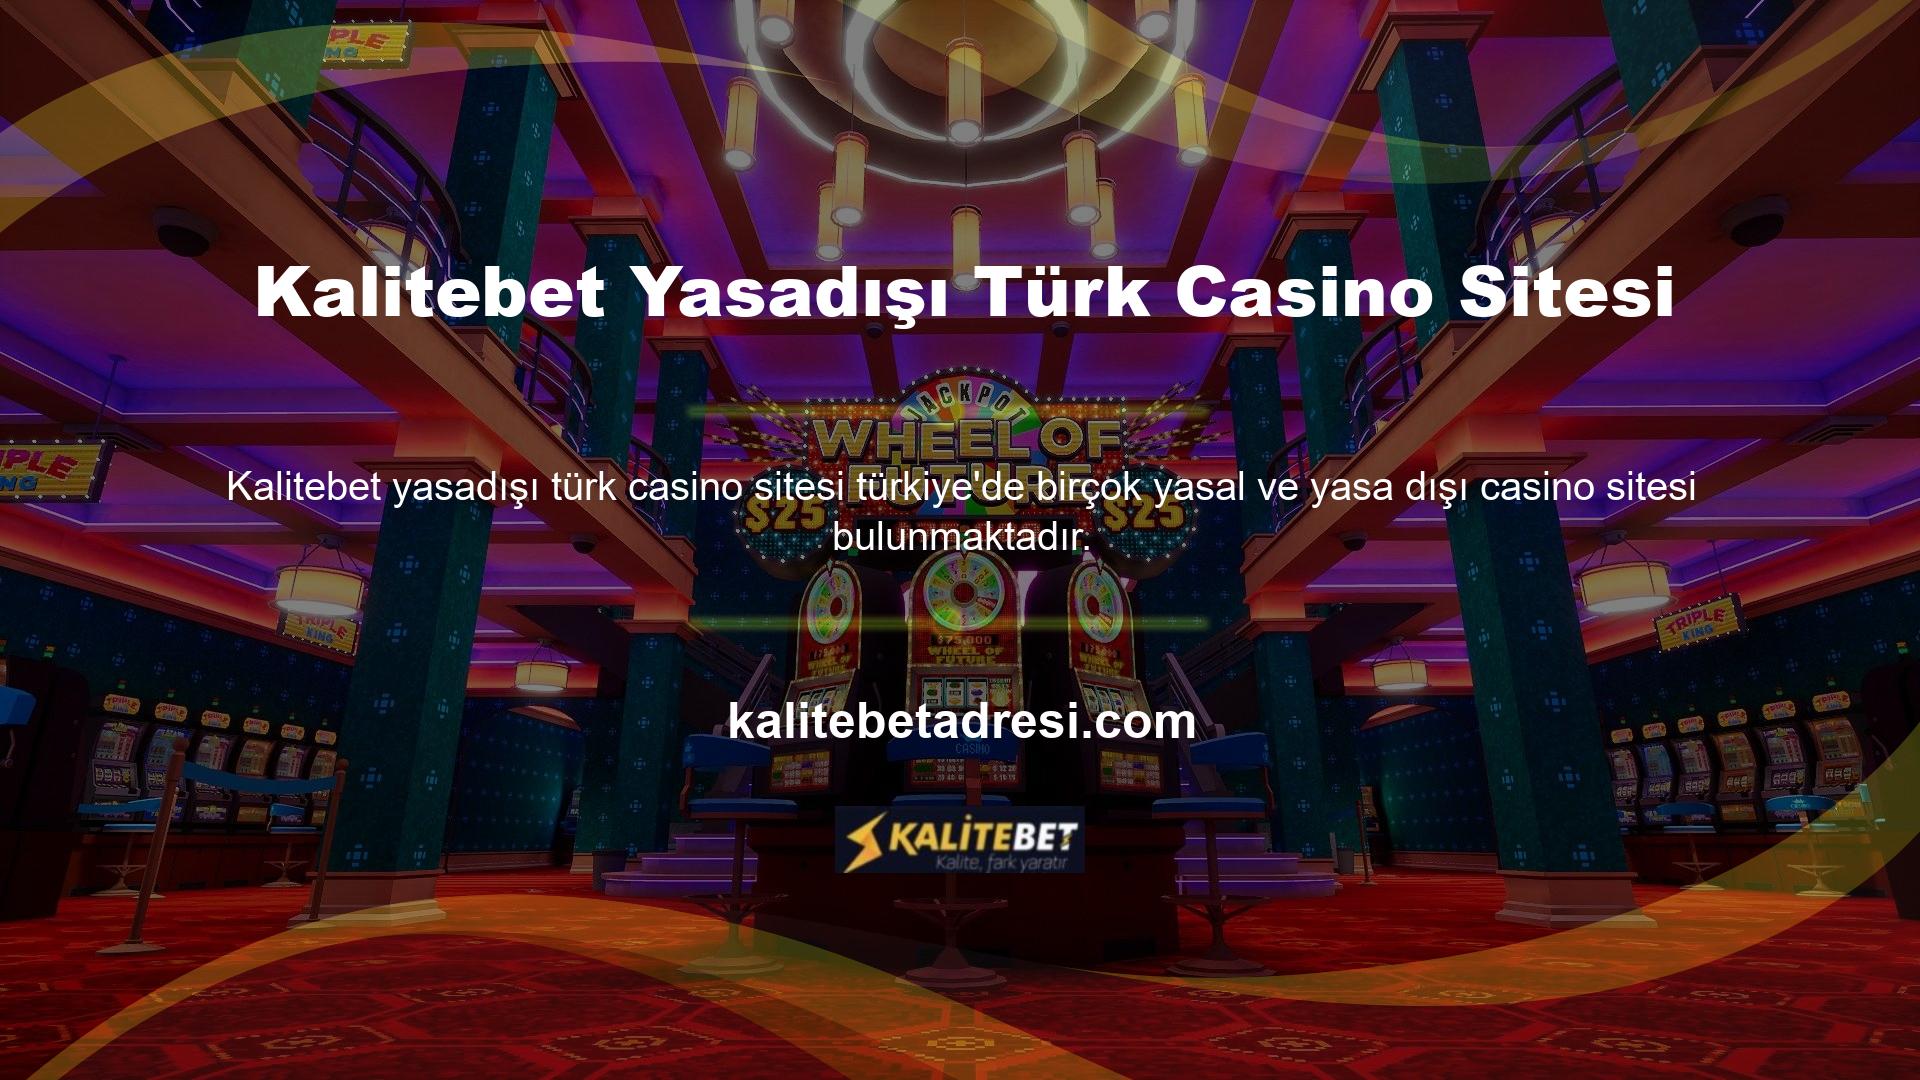 Tıpkı yasal casino siteleri gibi yasa dışı casino siteleri de Türkçe seçenekler sunmaktadır